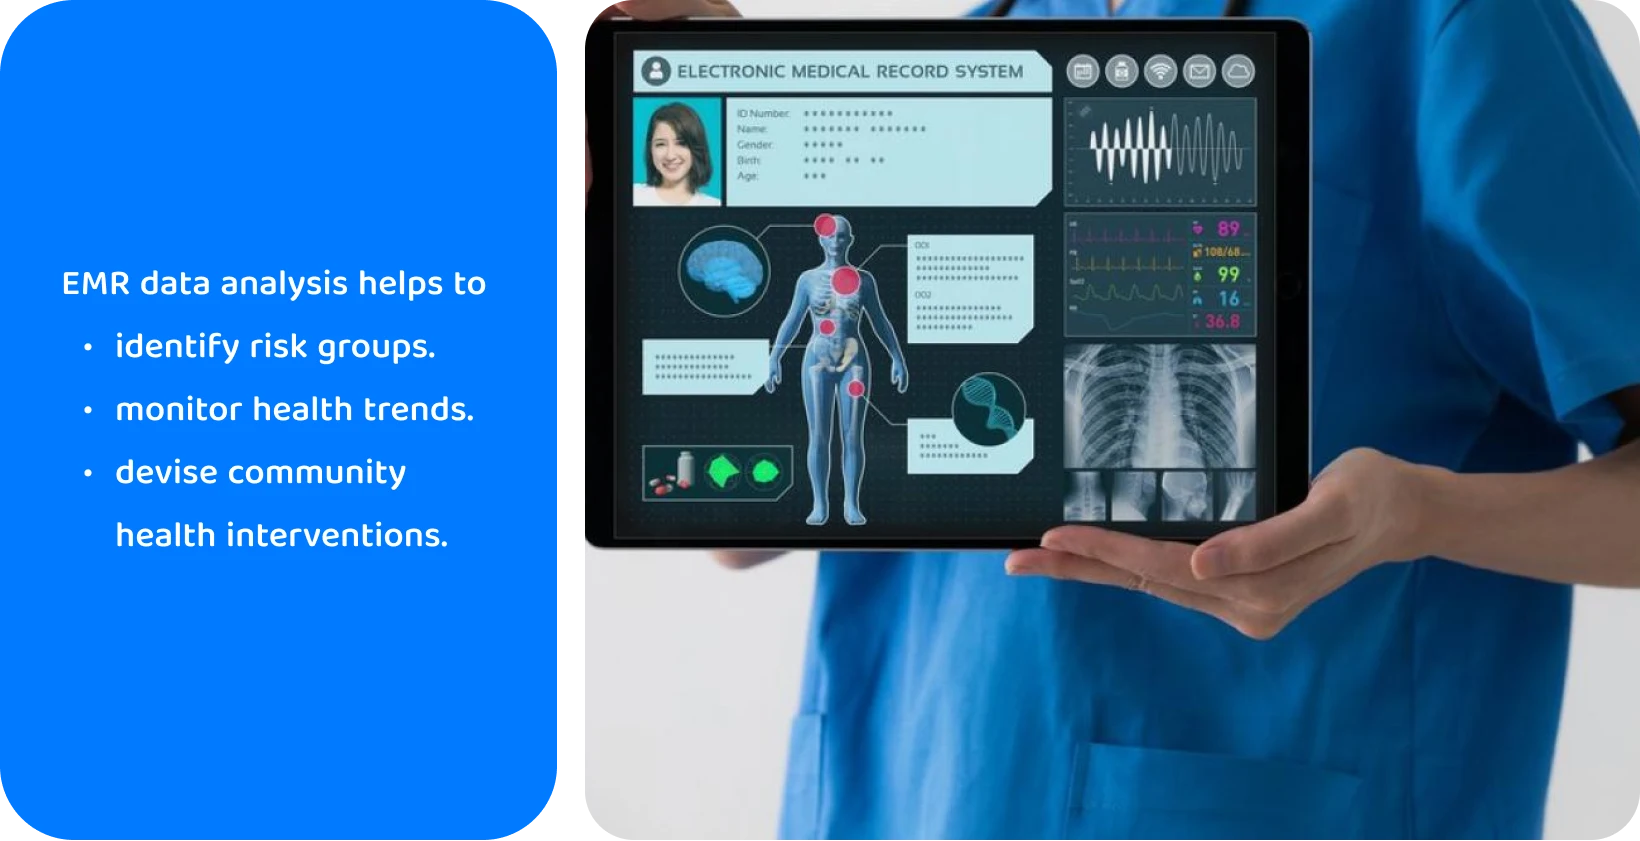 Zdravotnícky pracovník používajúci tablet so systémom elektronických lekárskych záznamov na analýzu údajov o zdravotnom stave pacienta.